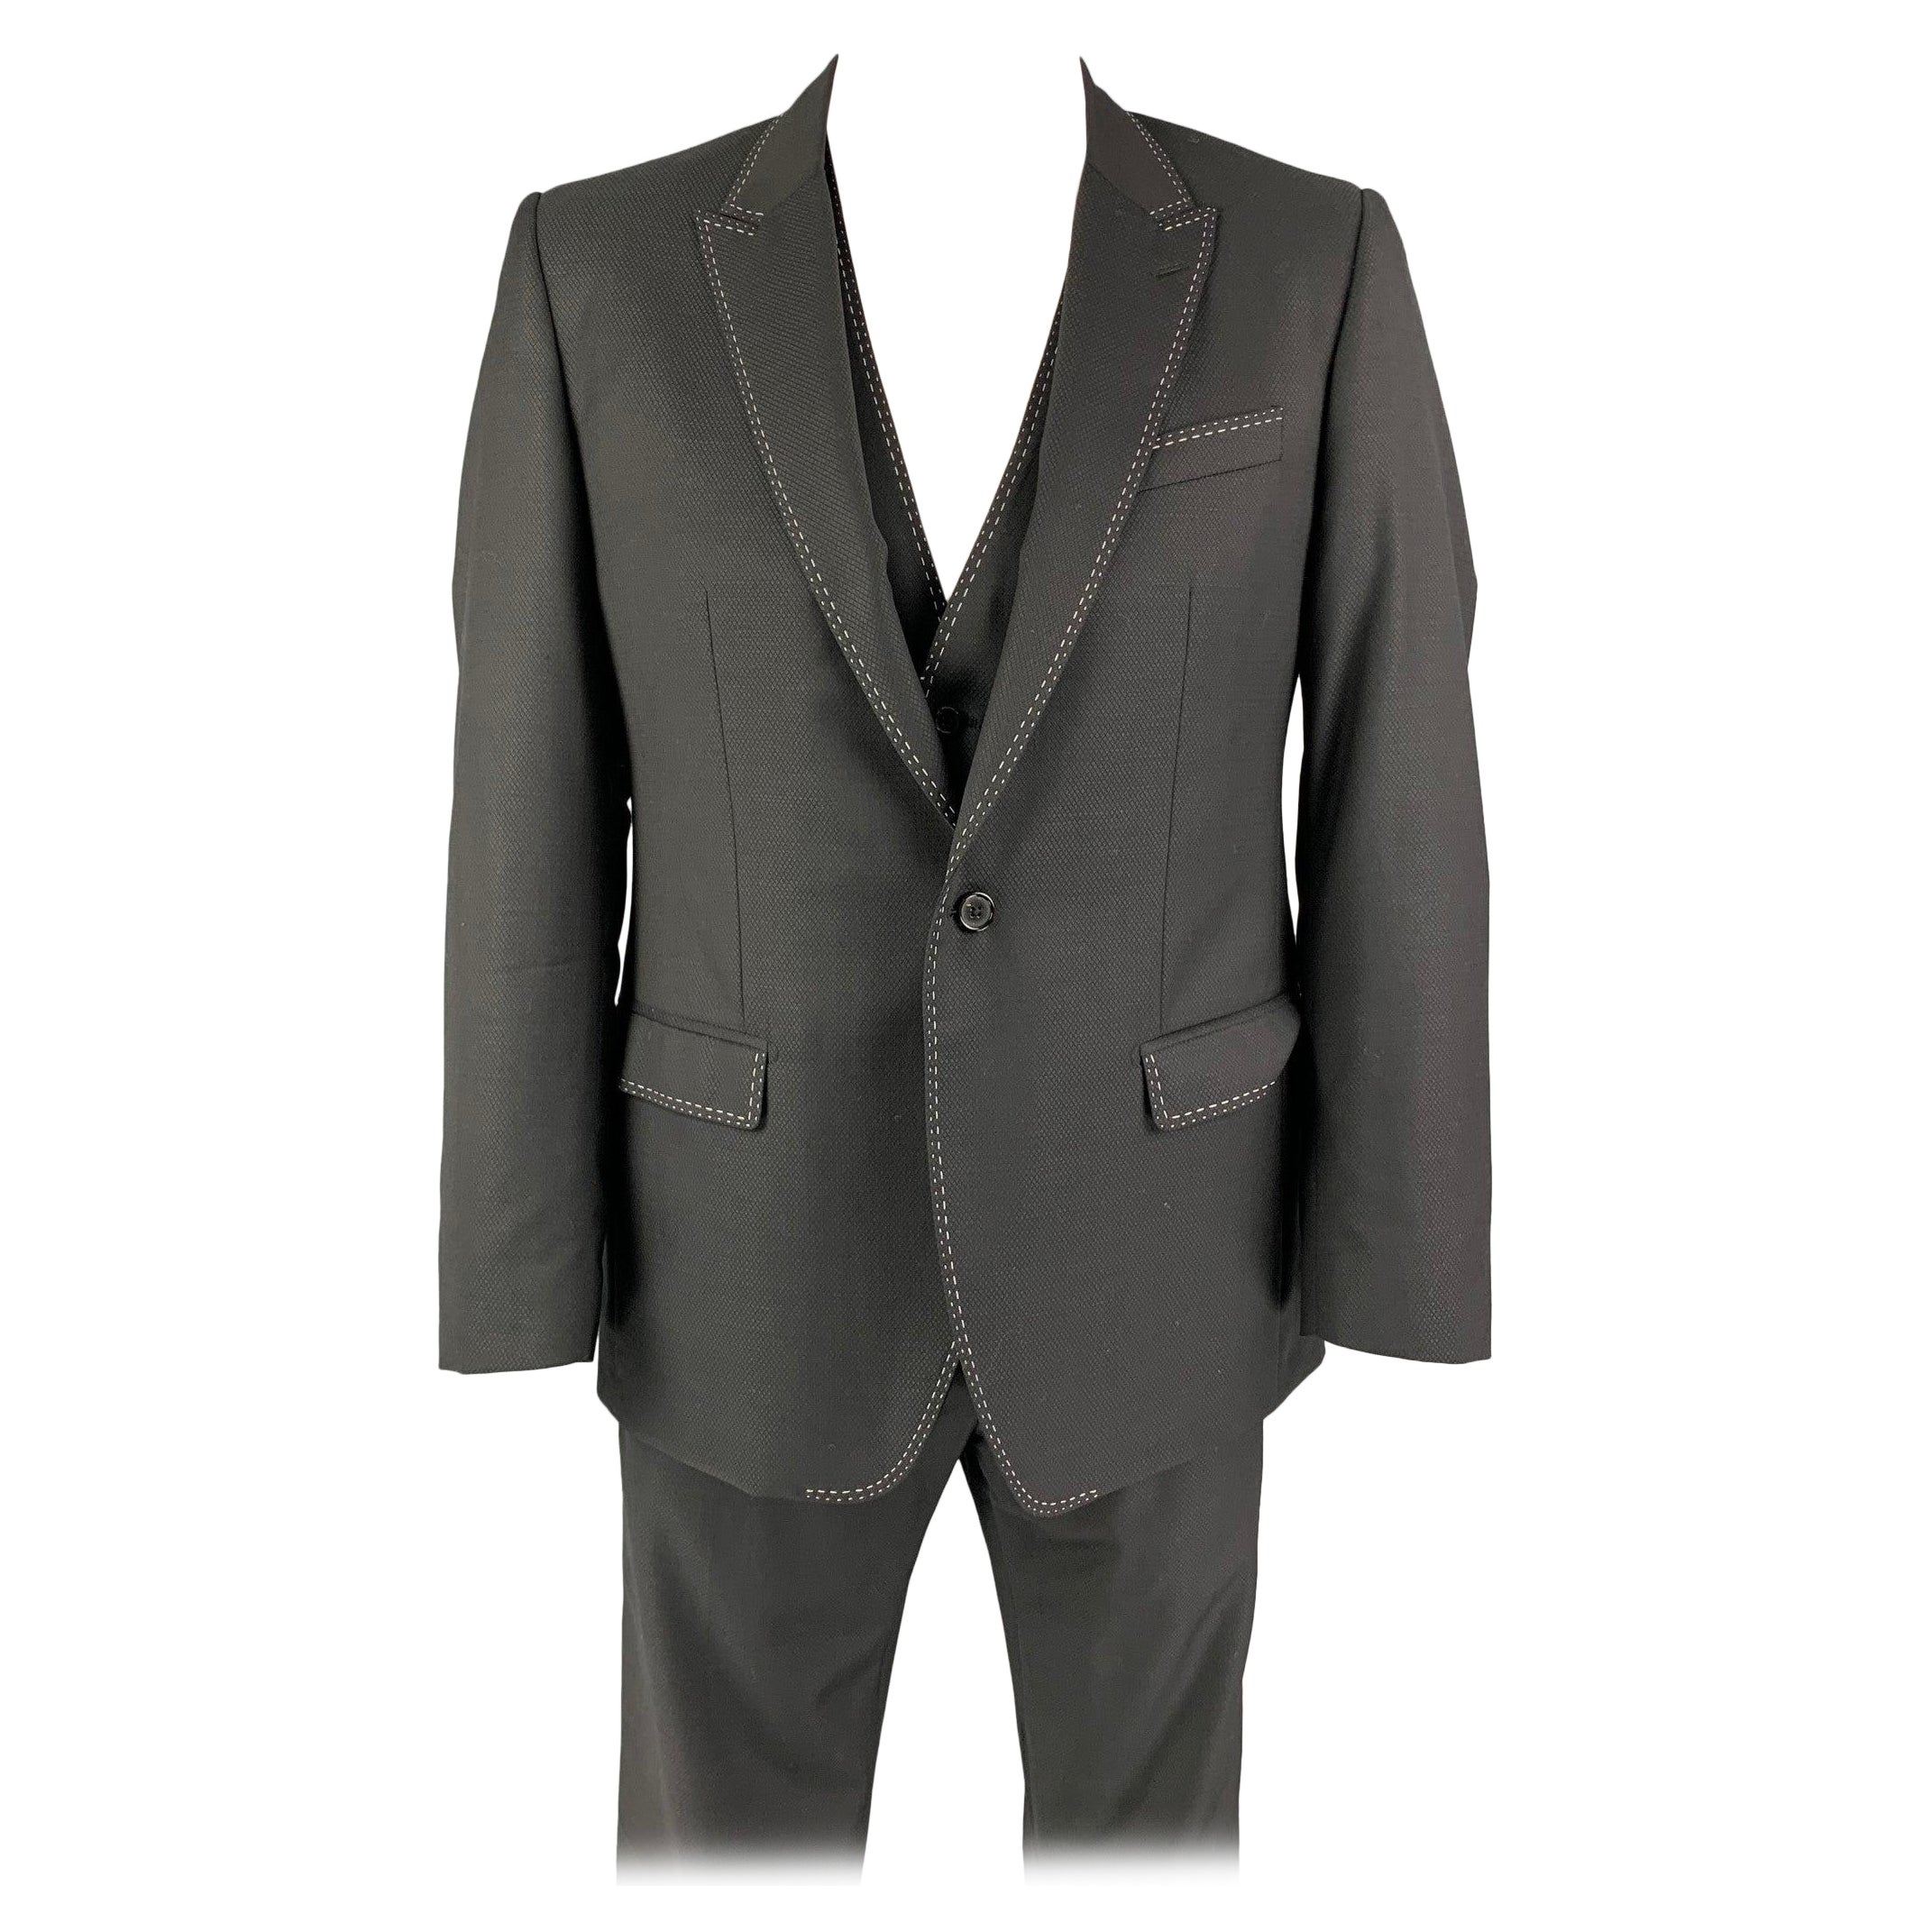 DOLCE & GABBANA Size 42 Black Contrast Stitch Wool Peak Lapel 3 Piece Suit For Sale